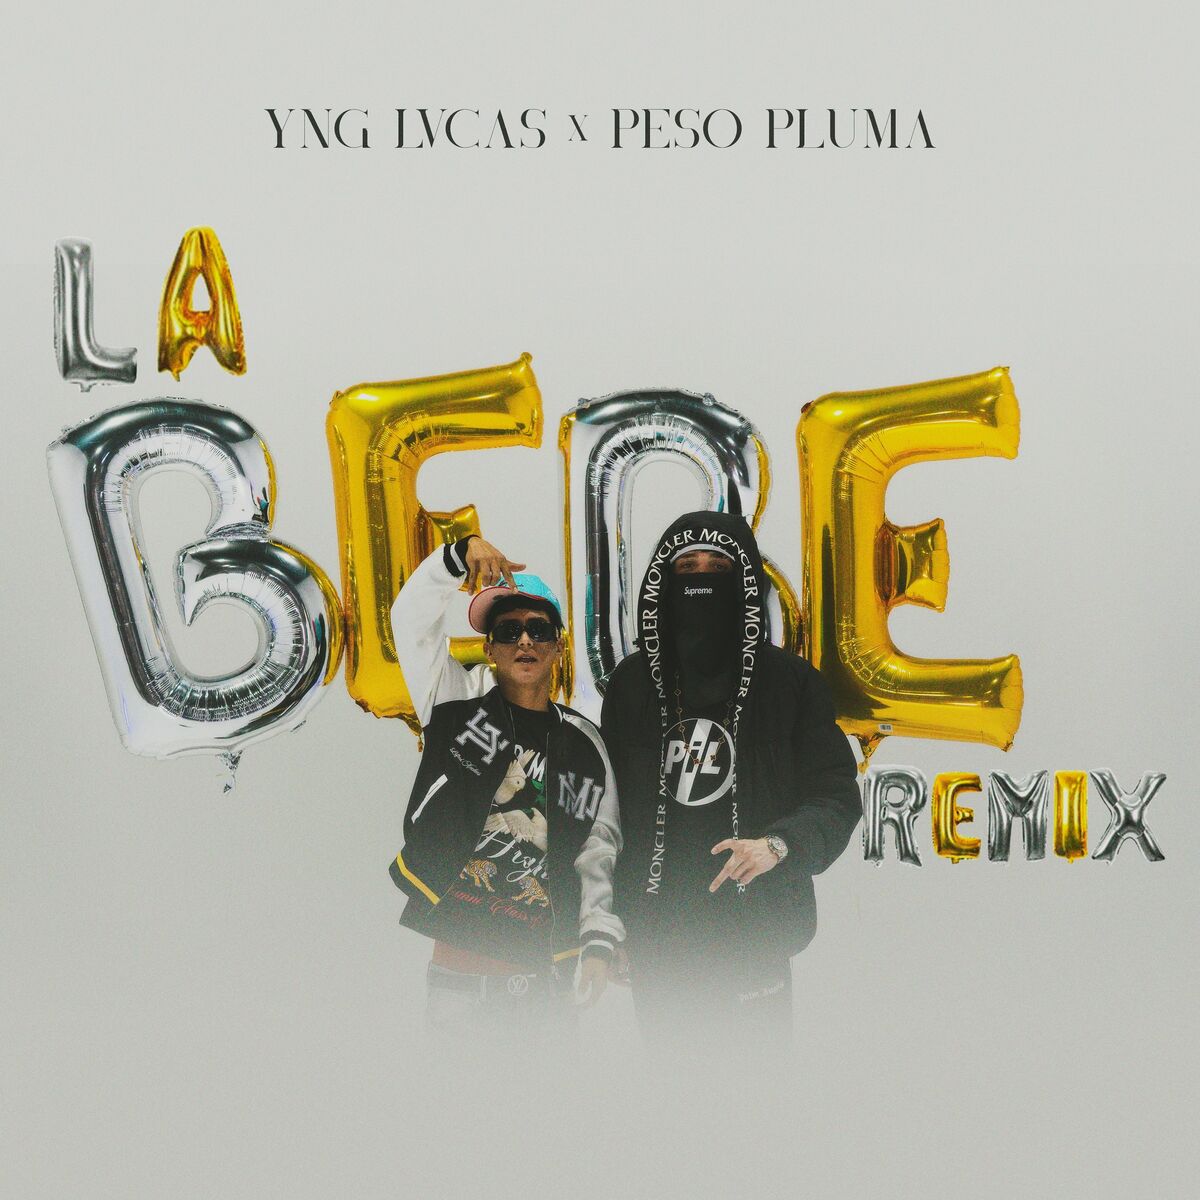 La Bebe (Remix): Yng Lvcas, Peso Pluma – La Bebe (Remix)